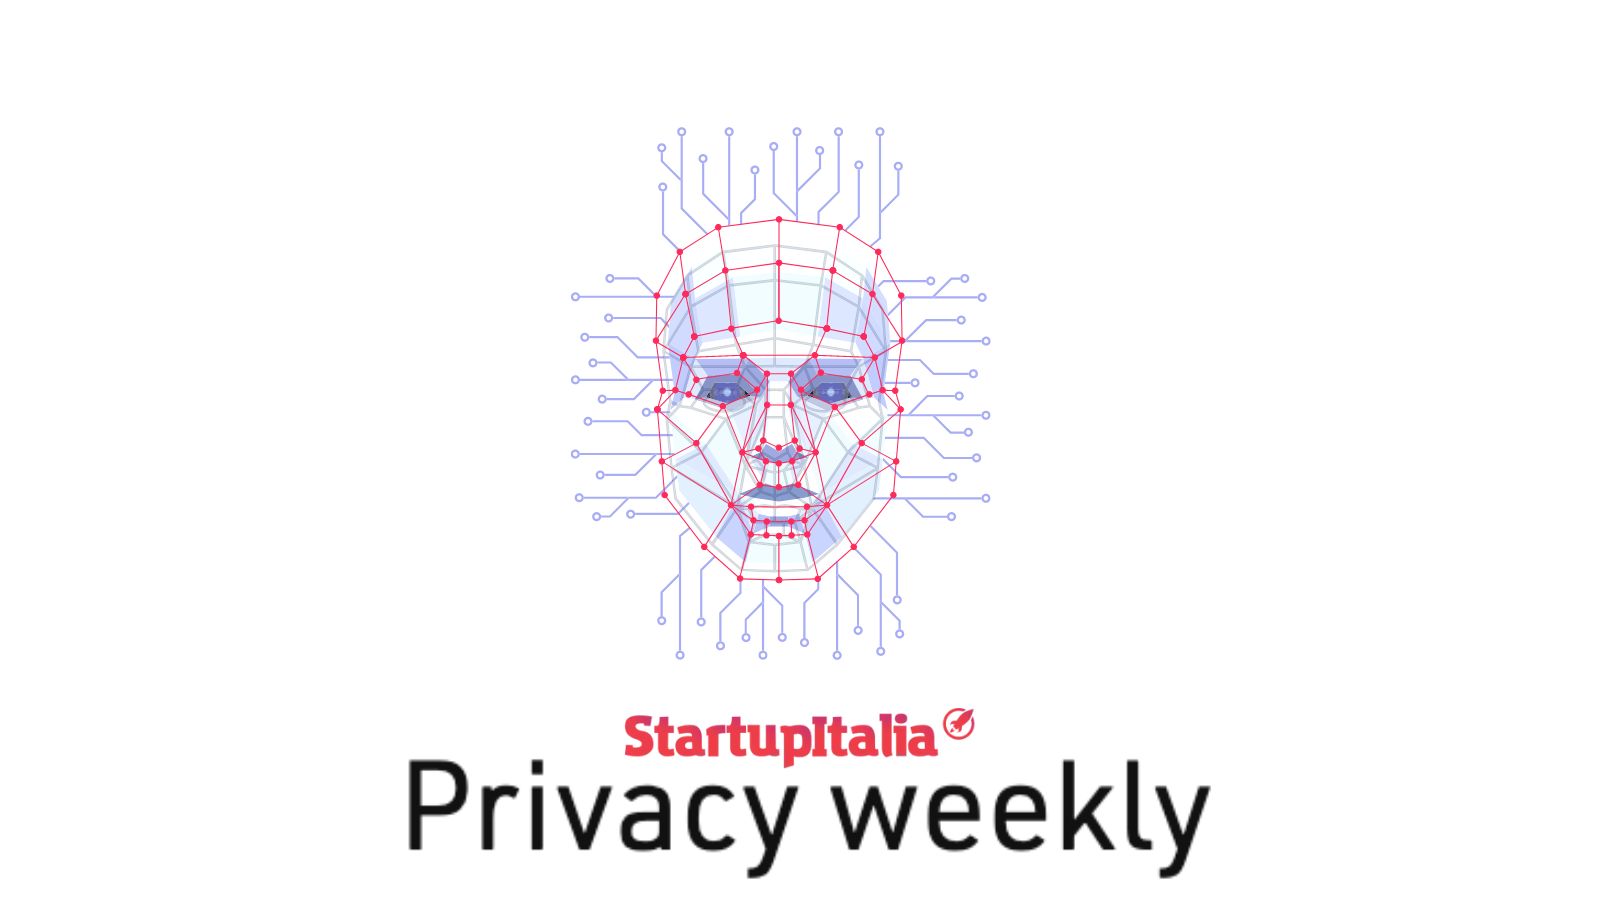 <a href="https://startupitalia.eu/200822-20230526-la-privacy-non-e-piu-la-cenerentola-dei-mercati-globali">La privacy non è più la Cenerentola dei mercati globali (startupitalia.eu)</a>